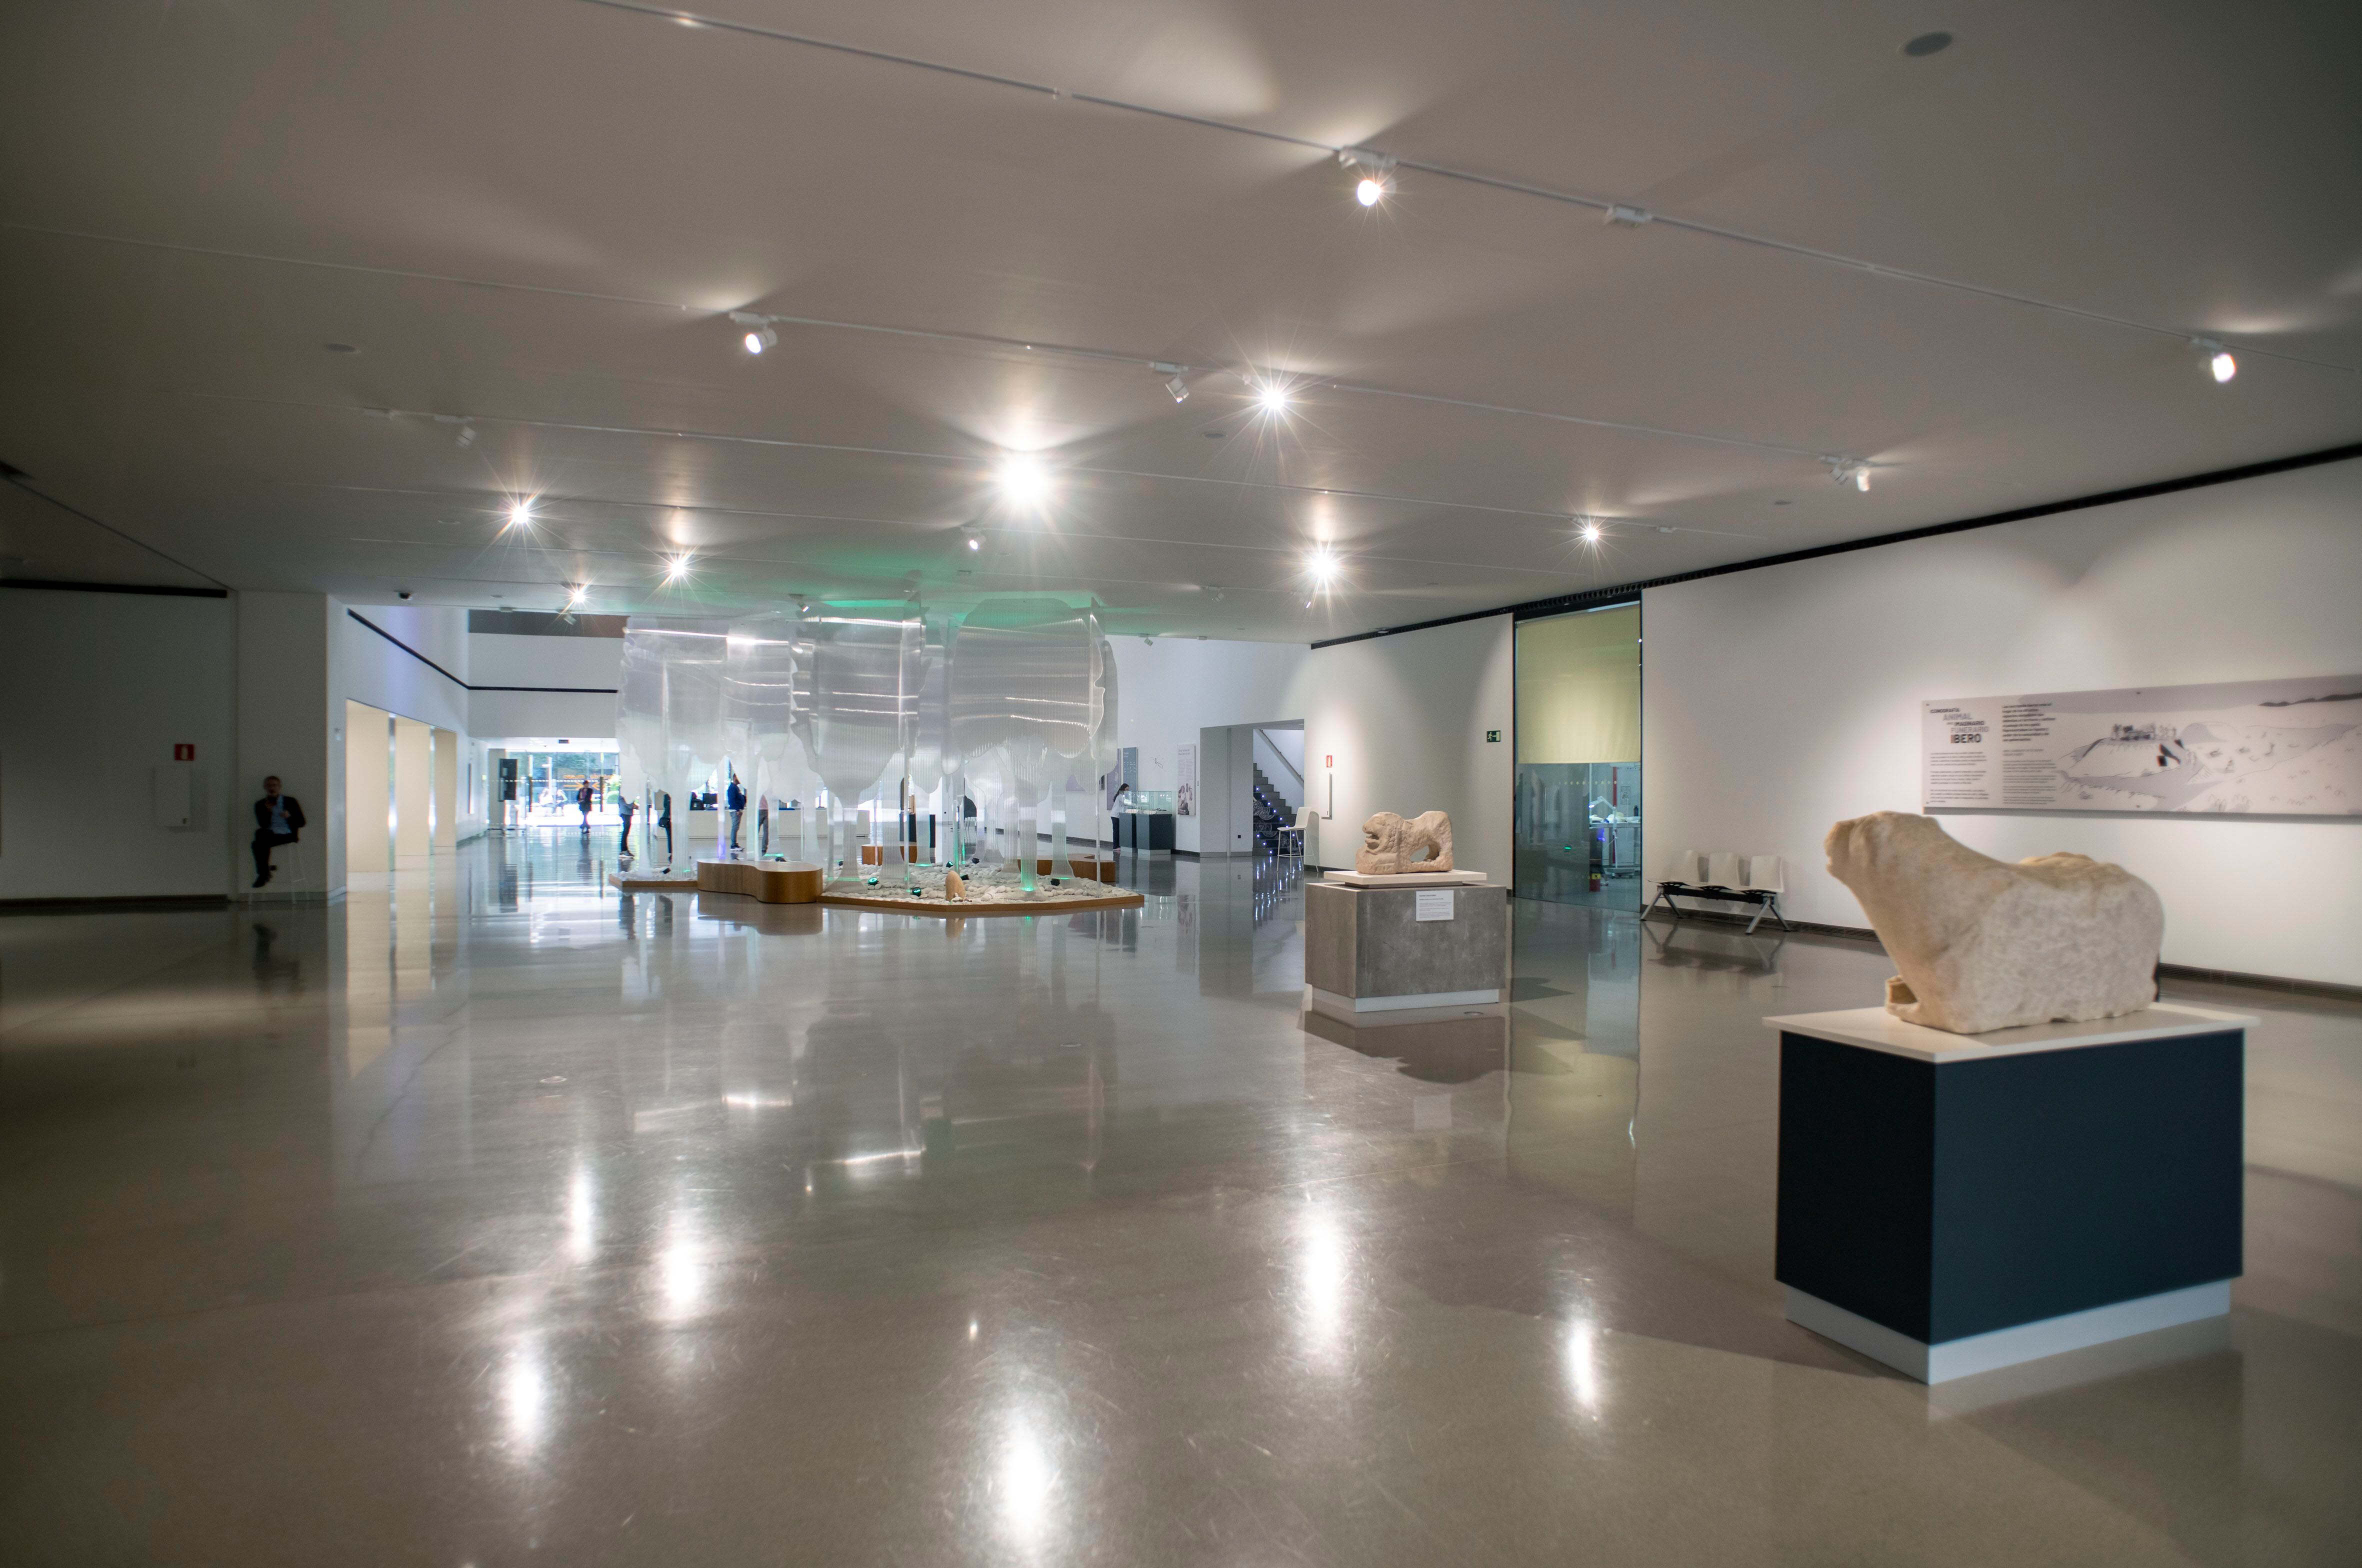 El Museo Íbero de Jaén, una mole vacía que espera su colección permanente siete años después de su inauguración